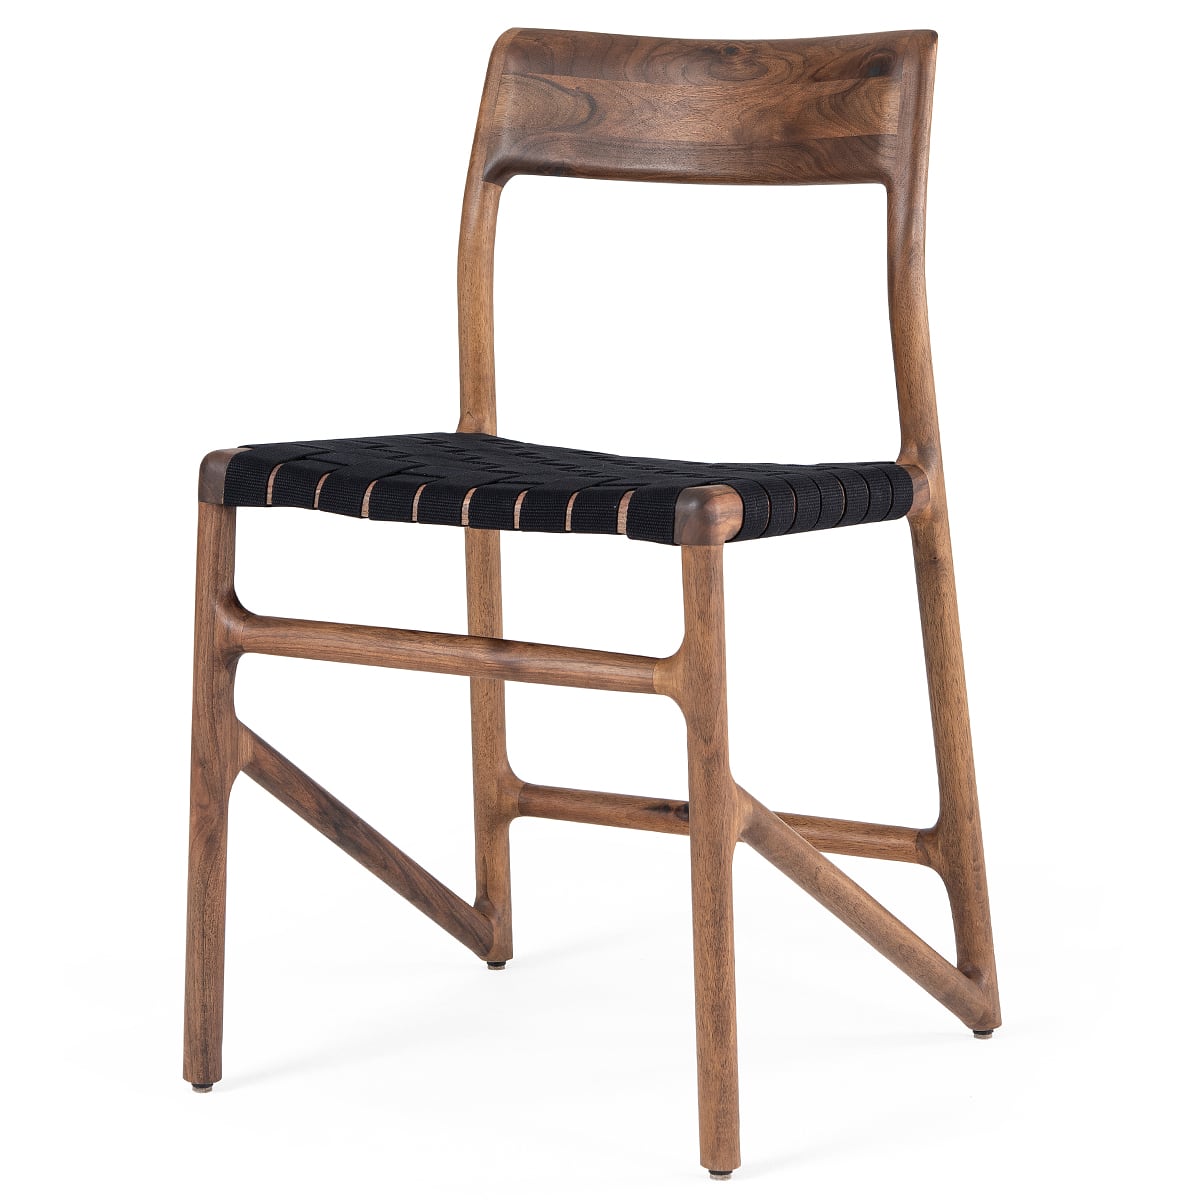 FAWN - sedia - Noce massello, finitura oliata naturale, fettuccia di cotone nera